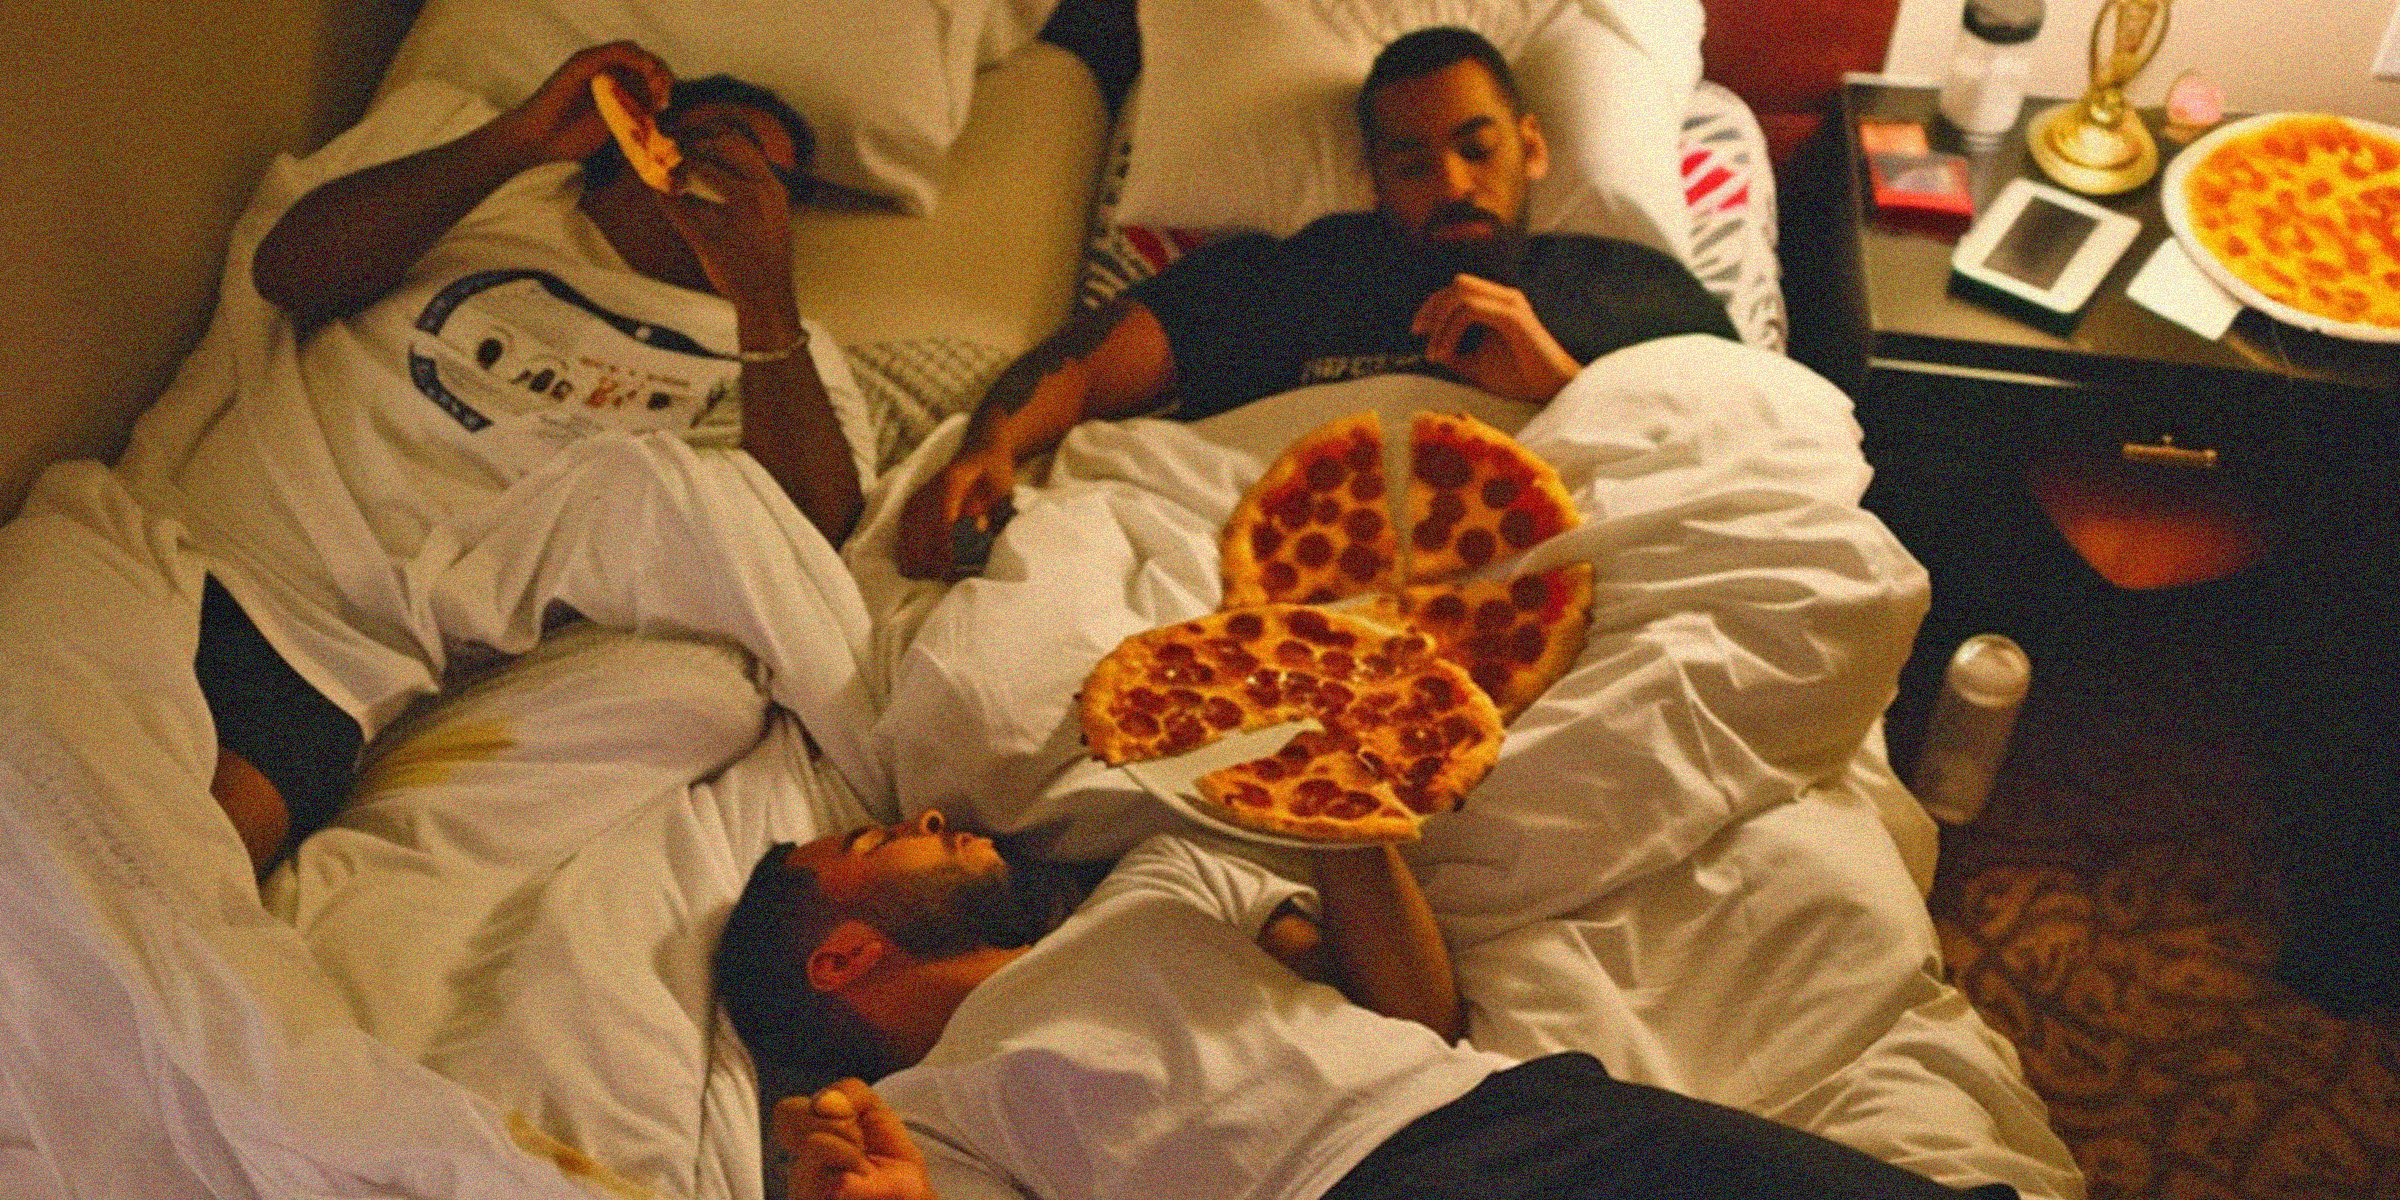 Hombres disfrutando de una fiesta de pizza | Fuente: AmoMama